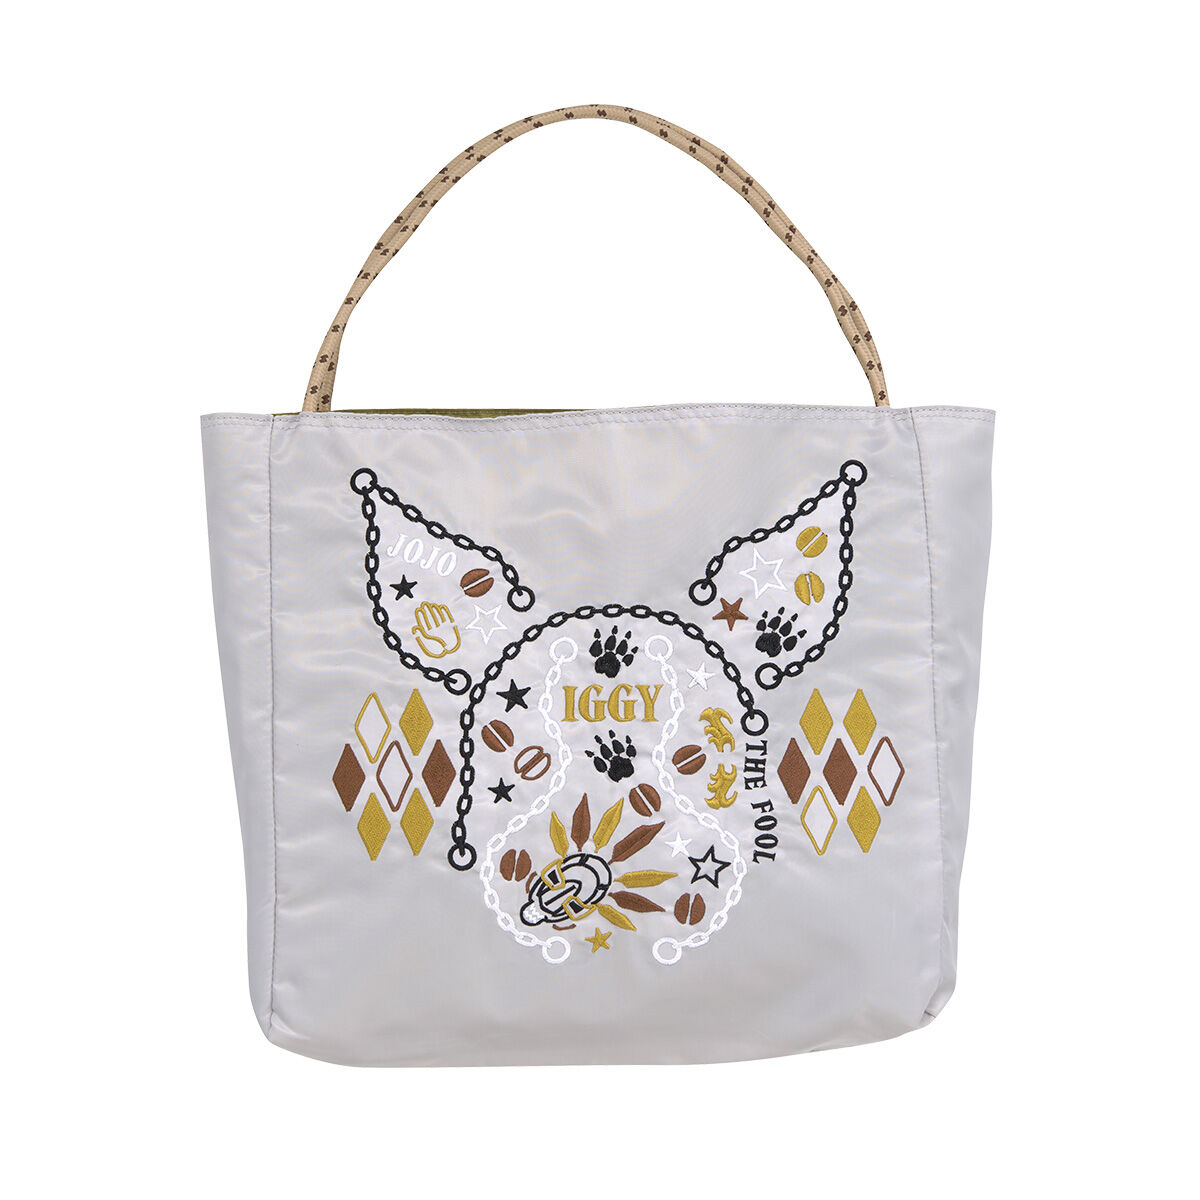 オノフィーフリー × ジョジョ イギー 刺繍バッグバッグ